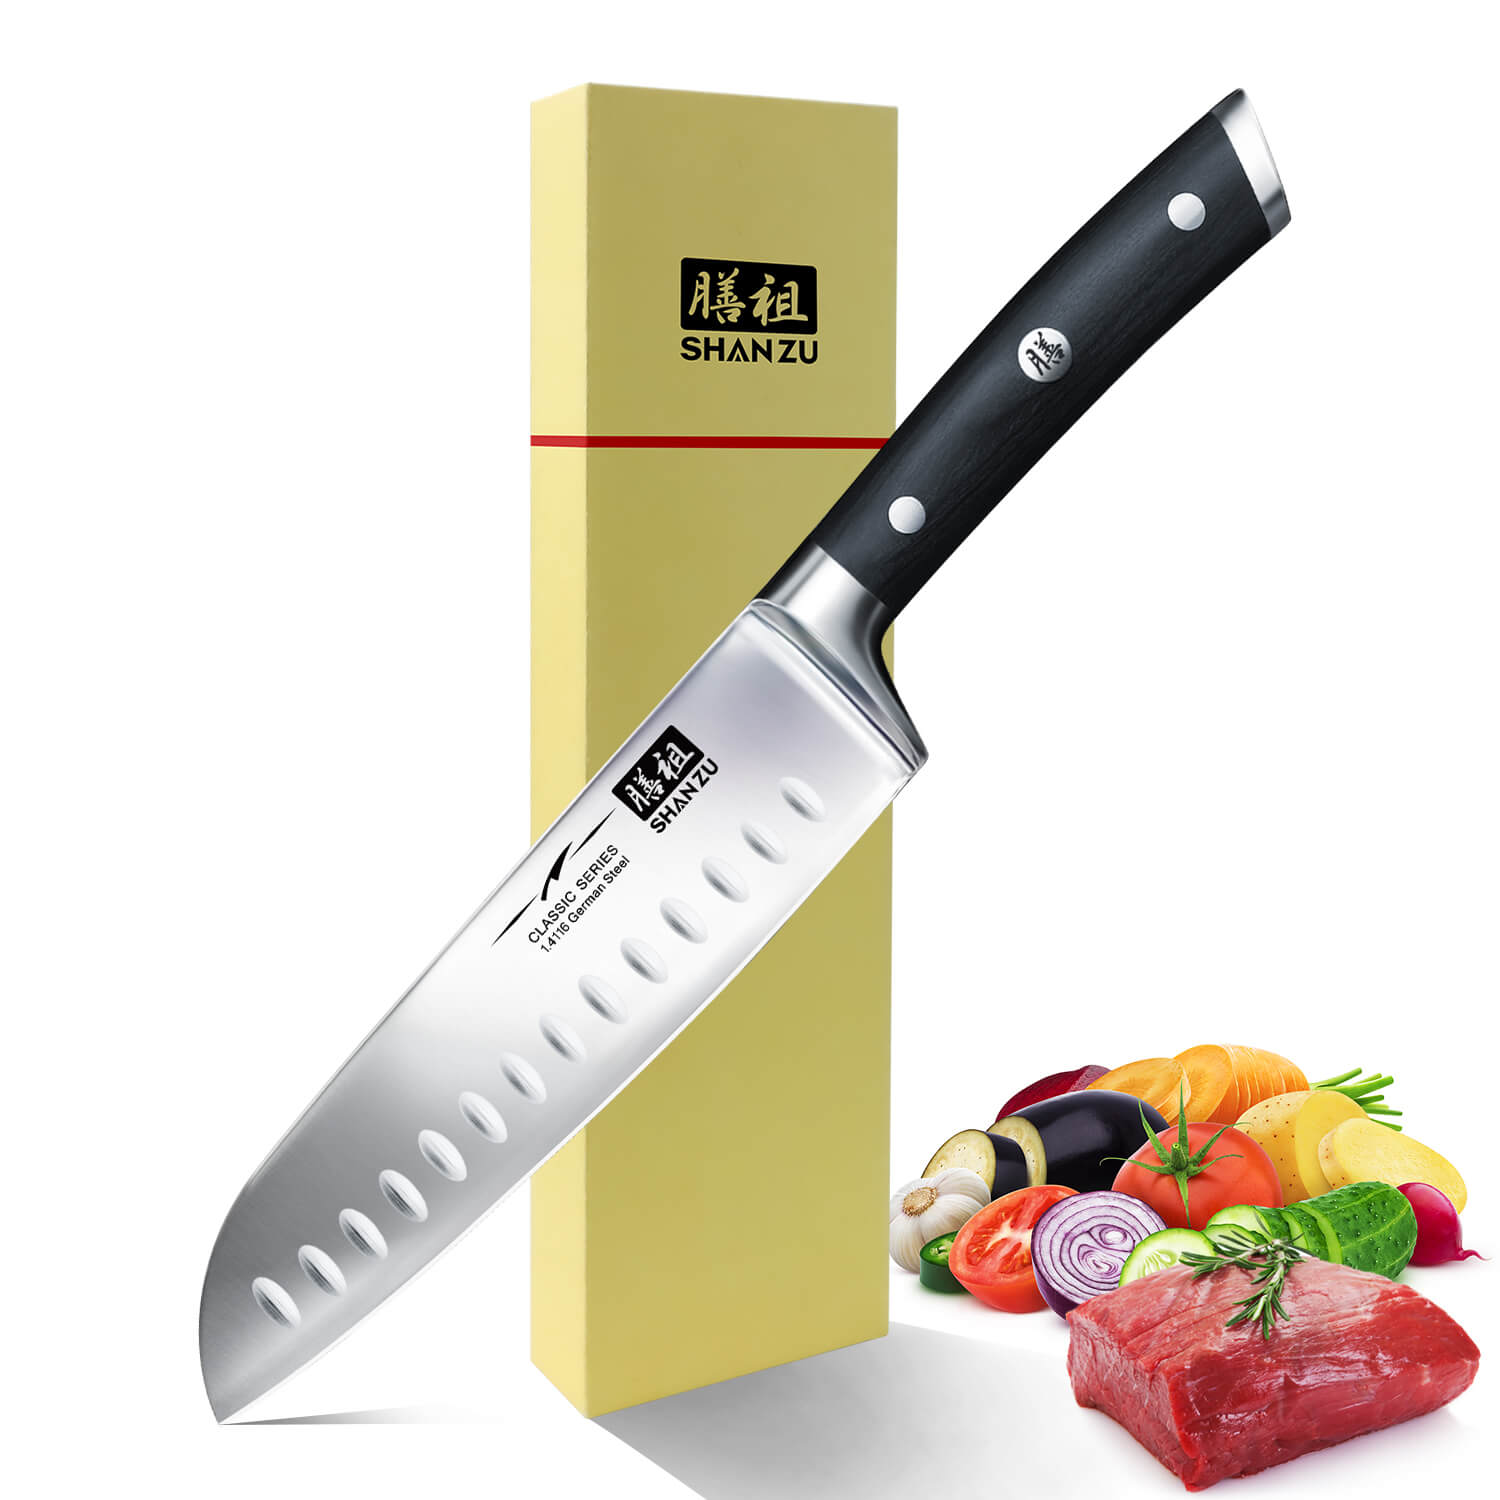  Kitory Cuchillo japonés Santoku de 7 pulgadas, cuchillo de chef  de acero inoxidable de alto carbono, cuchillo de cocina asiático con funda,  cuchillo de cocina ultra afilado, mango ergonómico de madera 